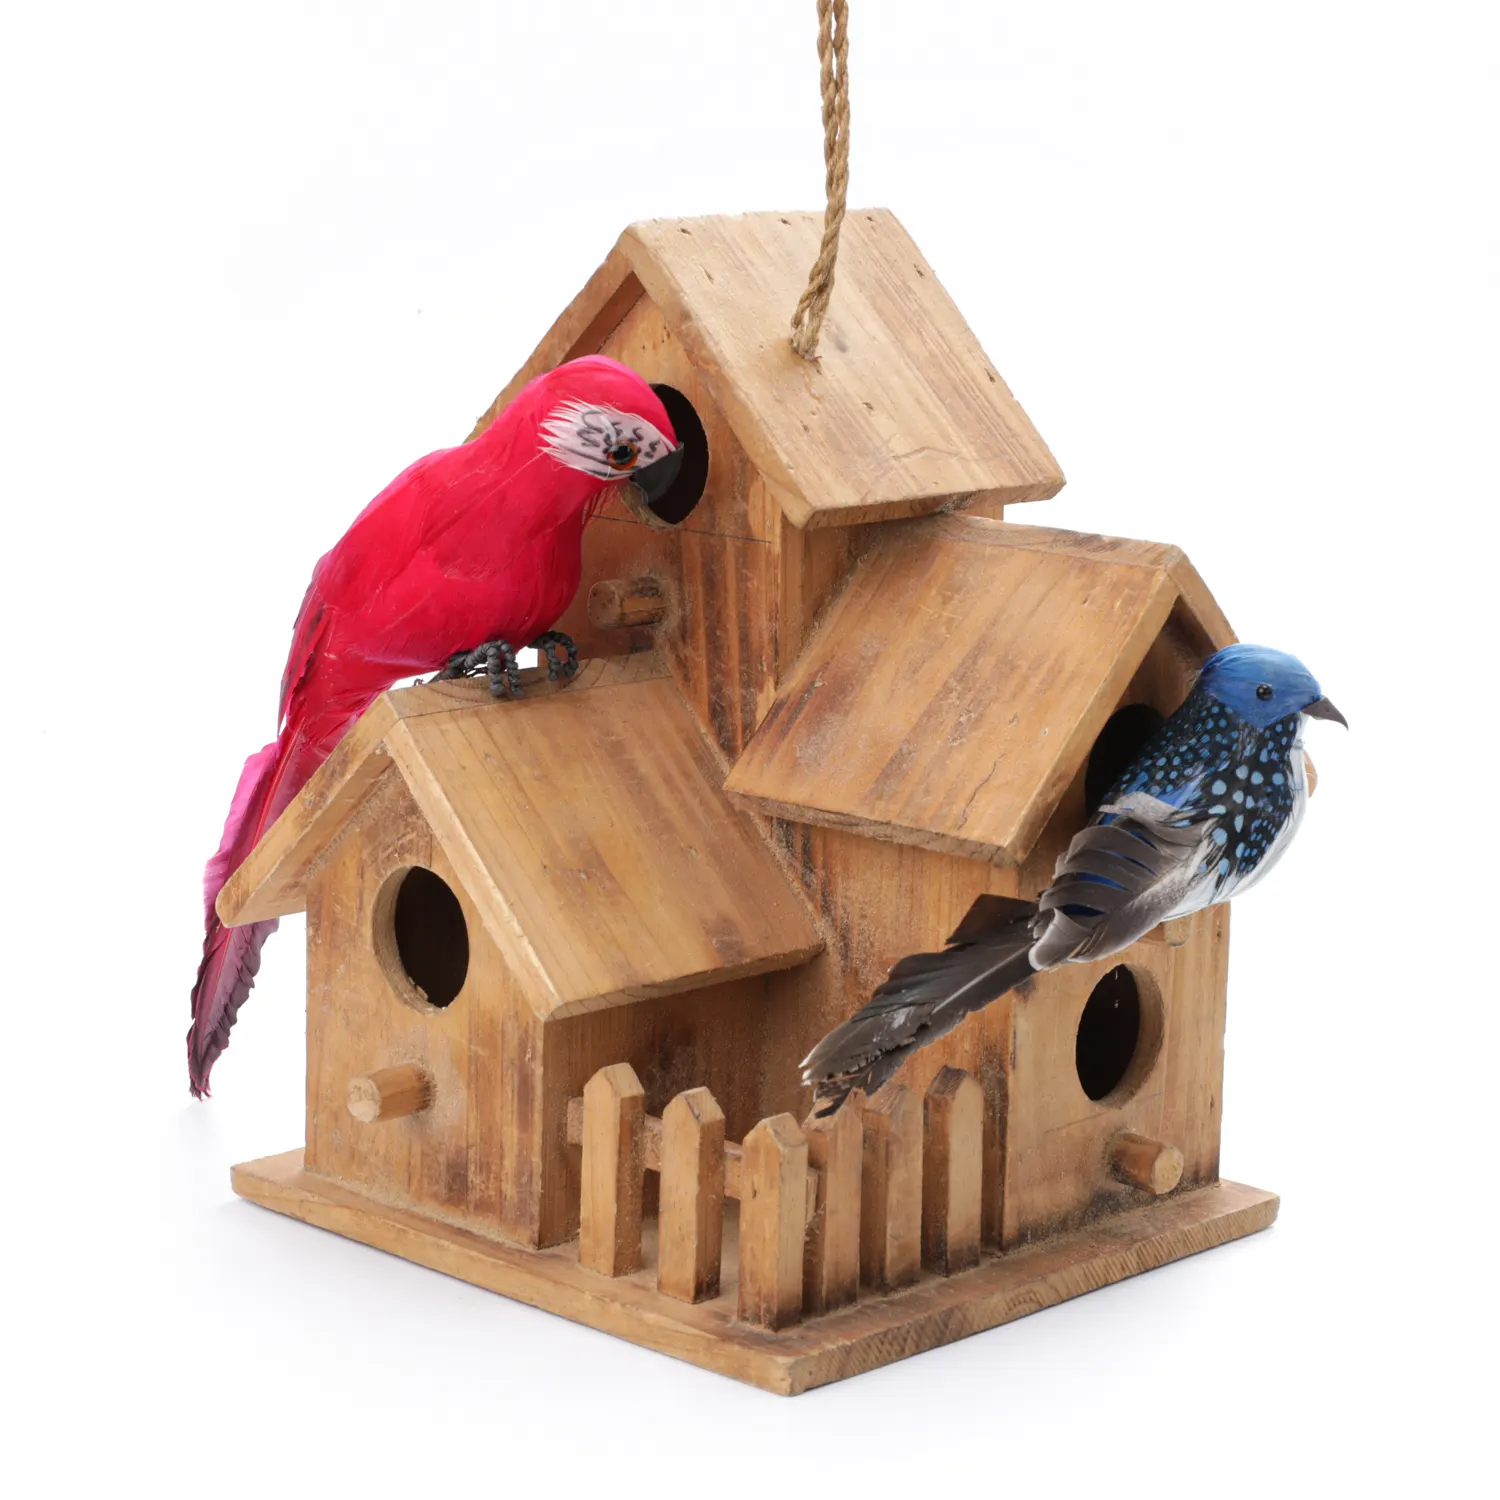 handmade natural materials Three Bird House wooden crafts Bird Houses